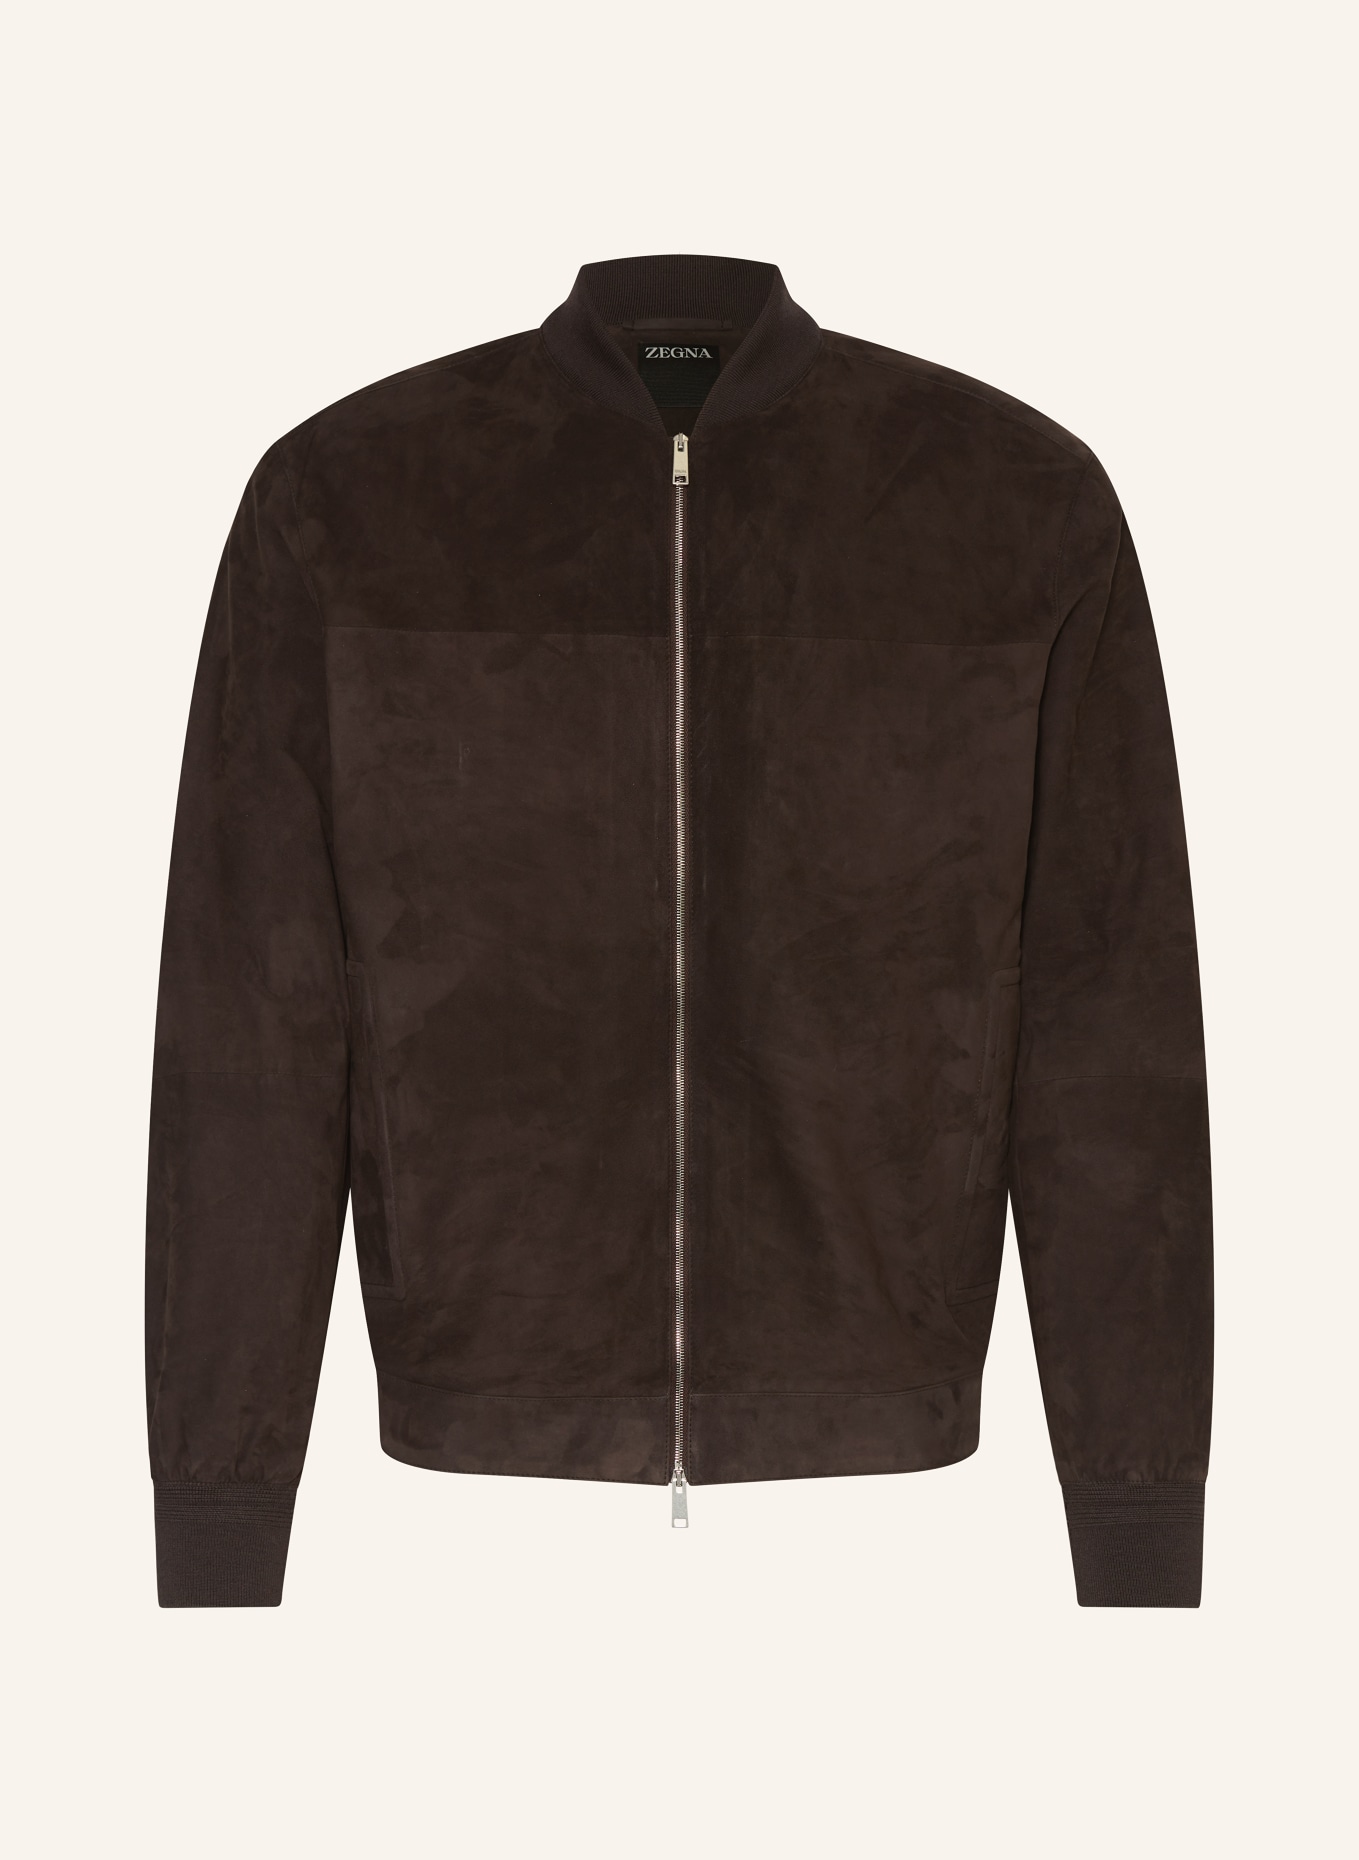 ZEGNA Leather jacket, Color: DARK BROWN (Image 1)